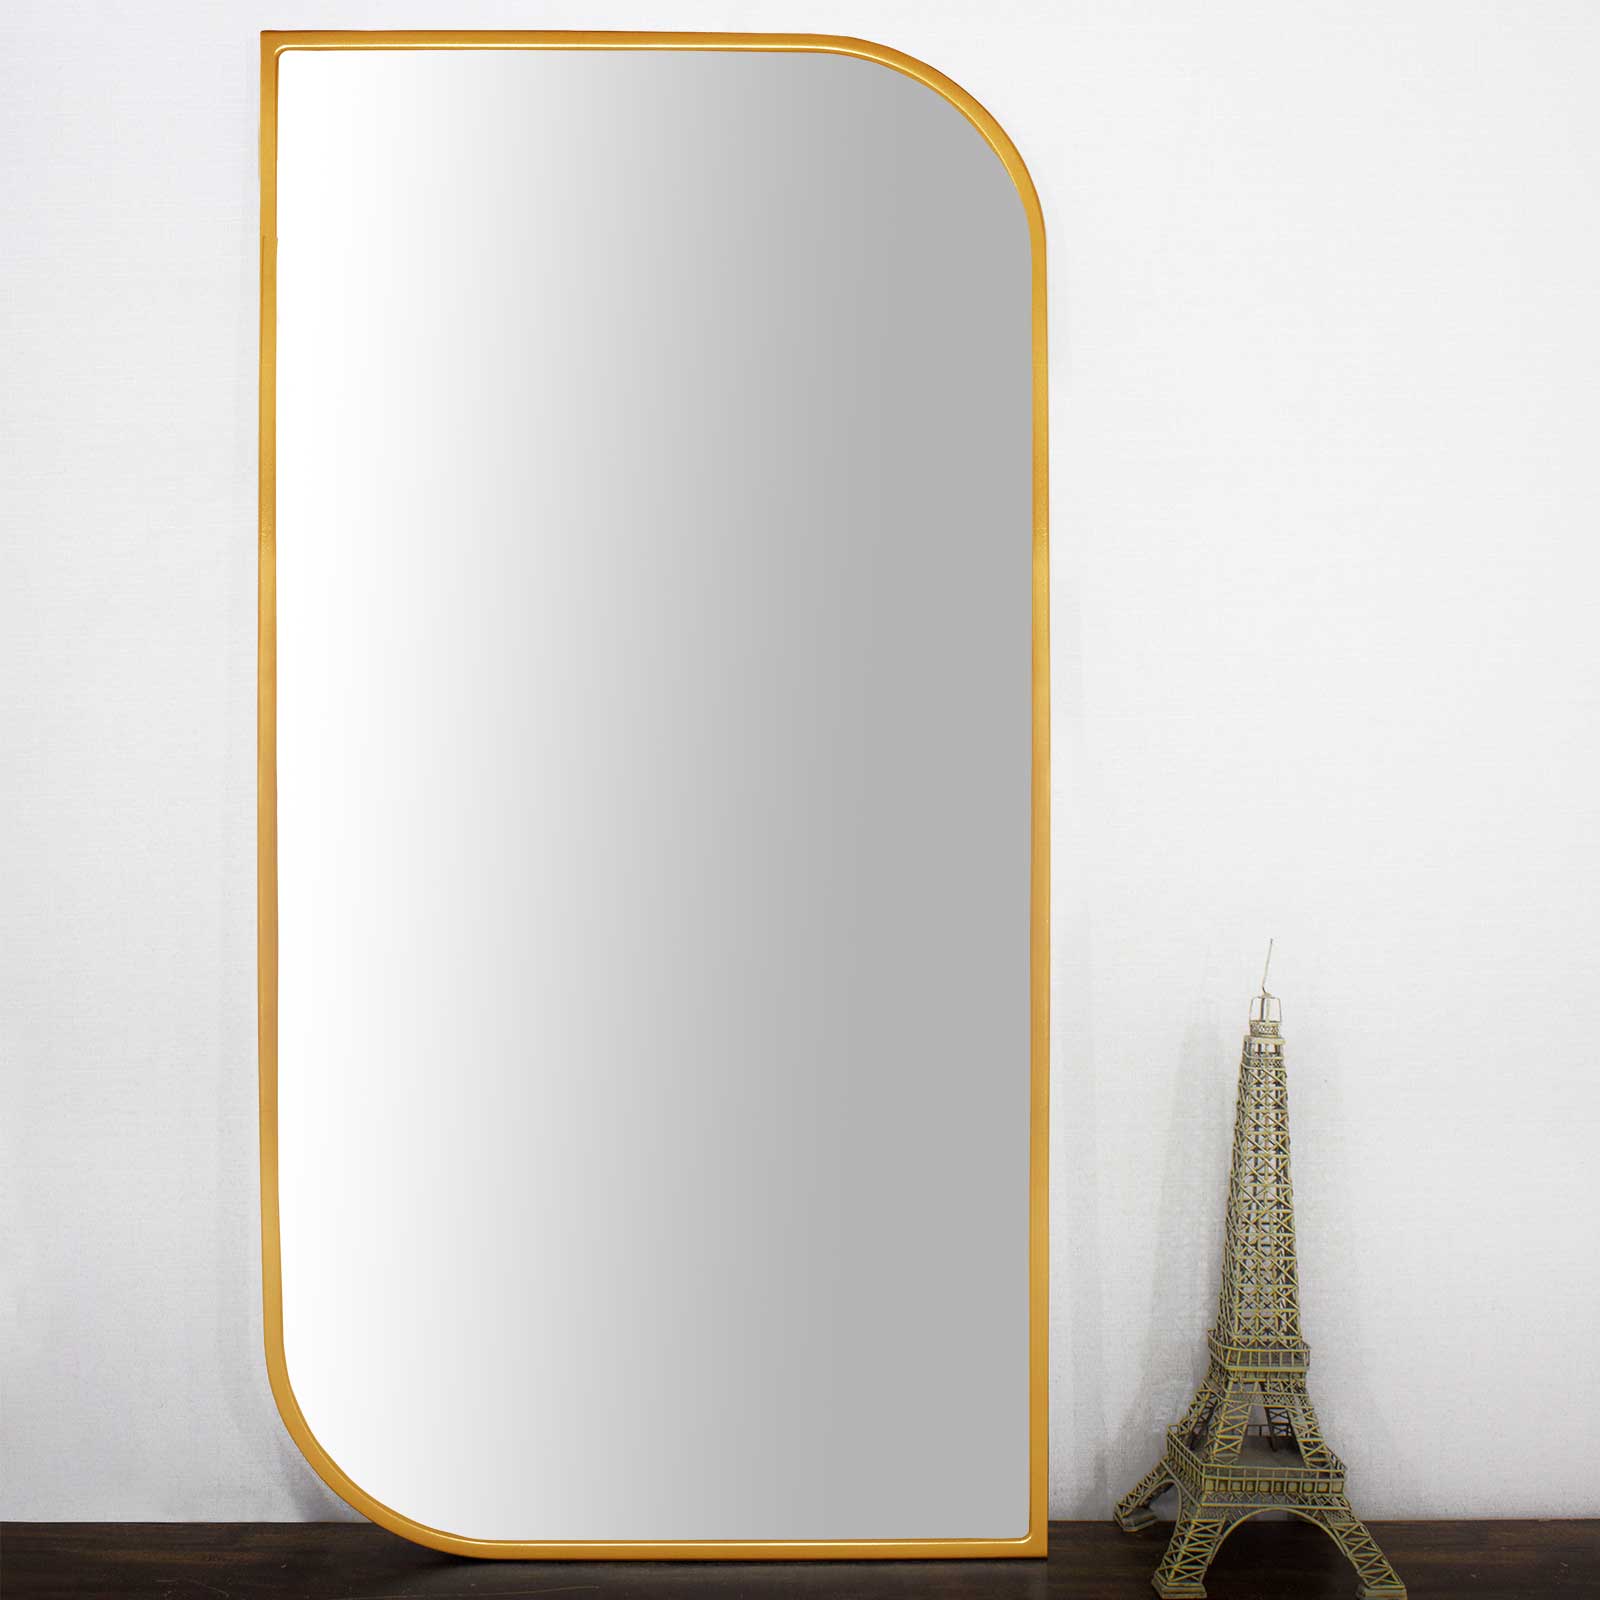 Moldura Design Mdf Laqueada Dourada Brilho para Espelhos Vrias Medidas